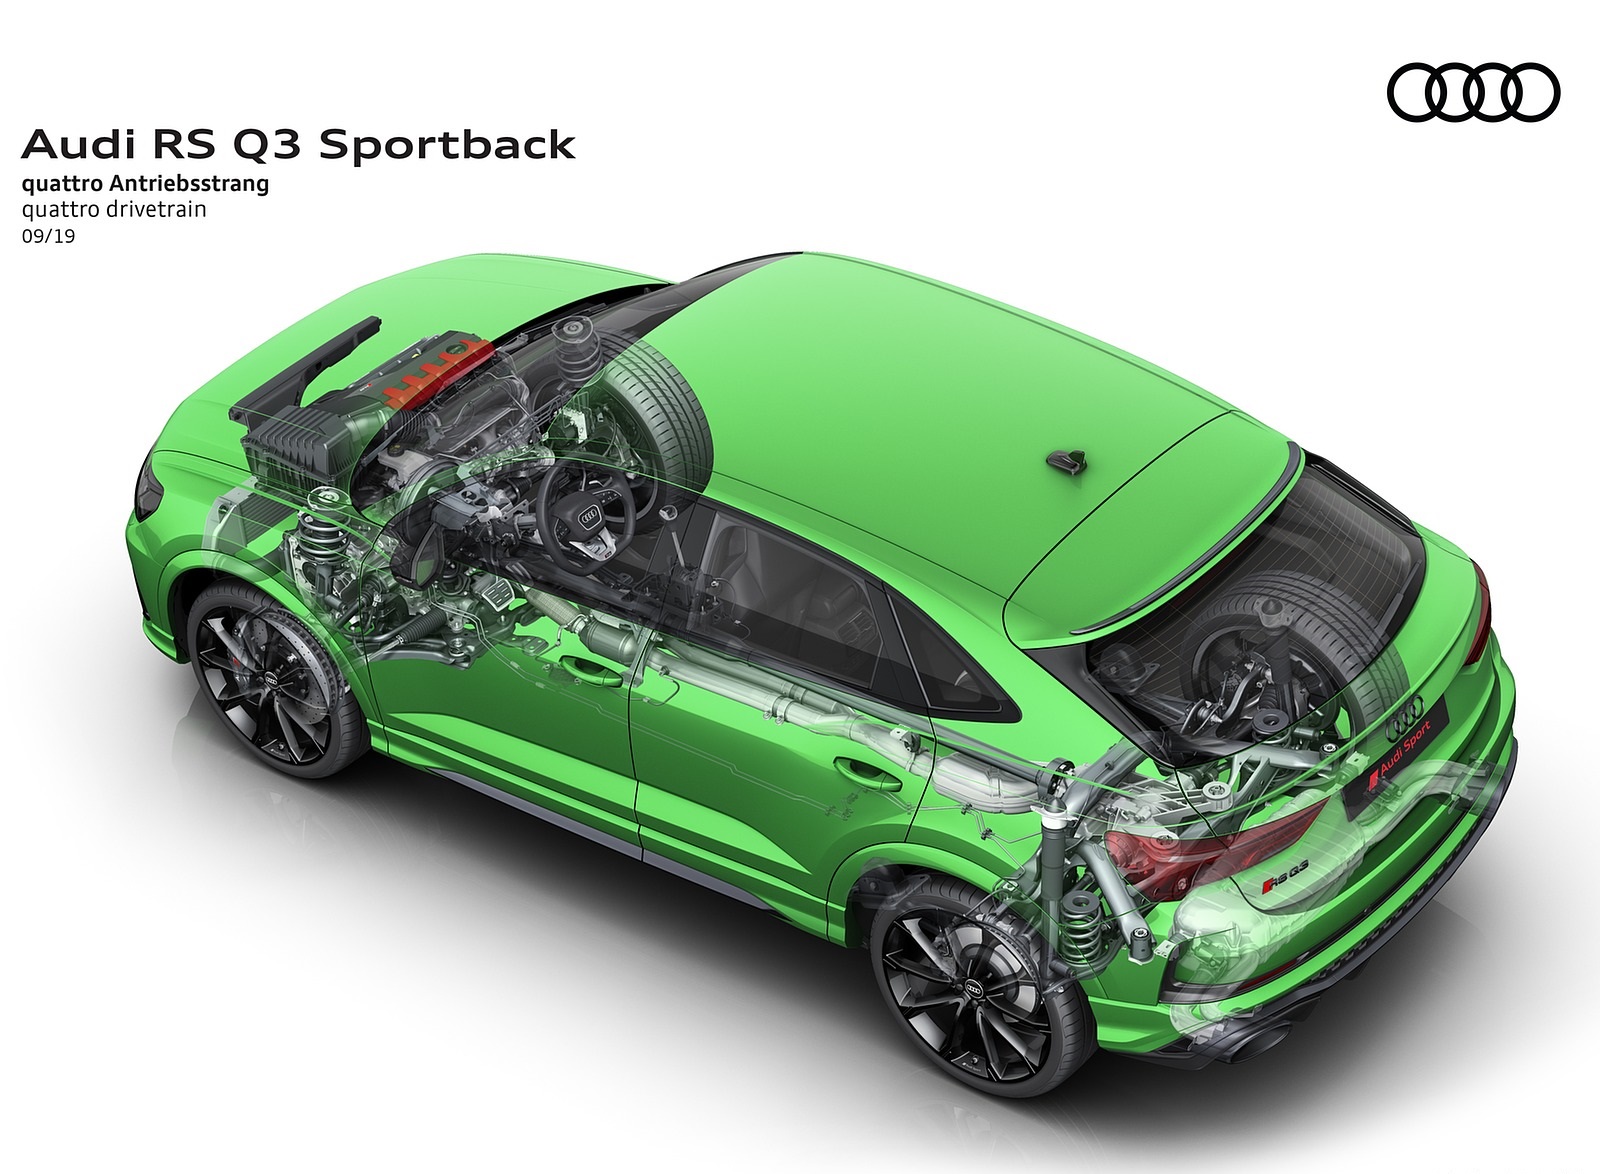 2020 Audi RS Q3 Sportback quattro drivetrain Wallpapers #110 of 127